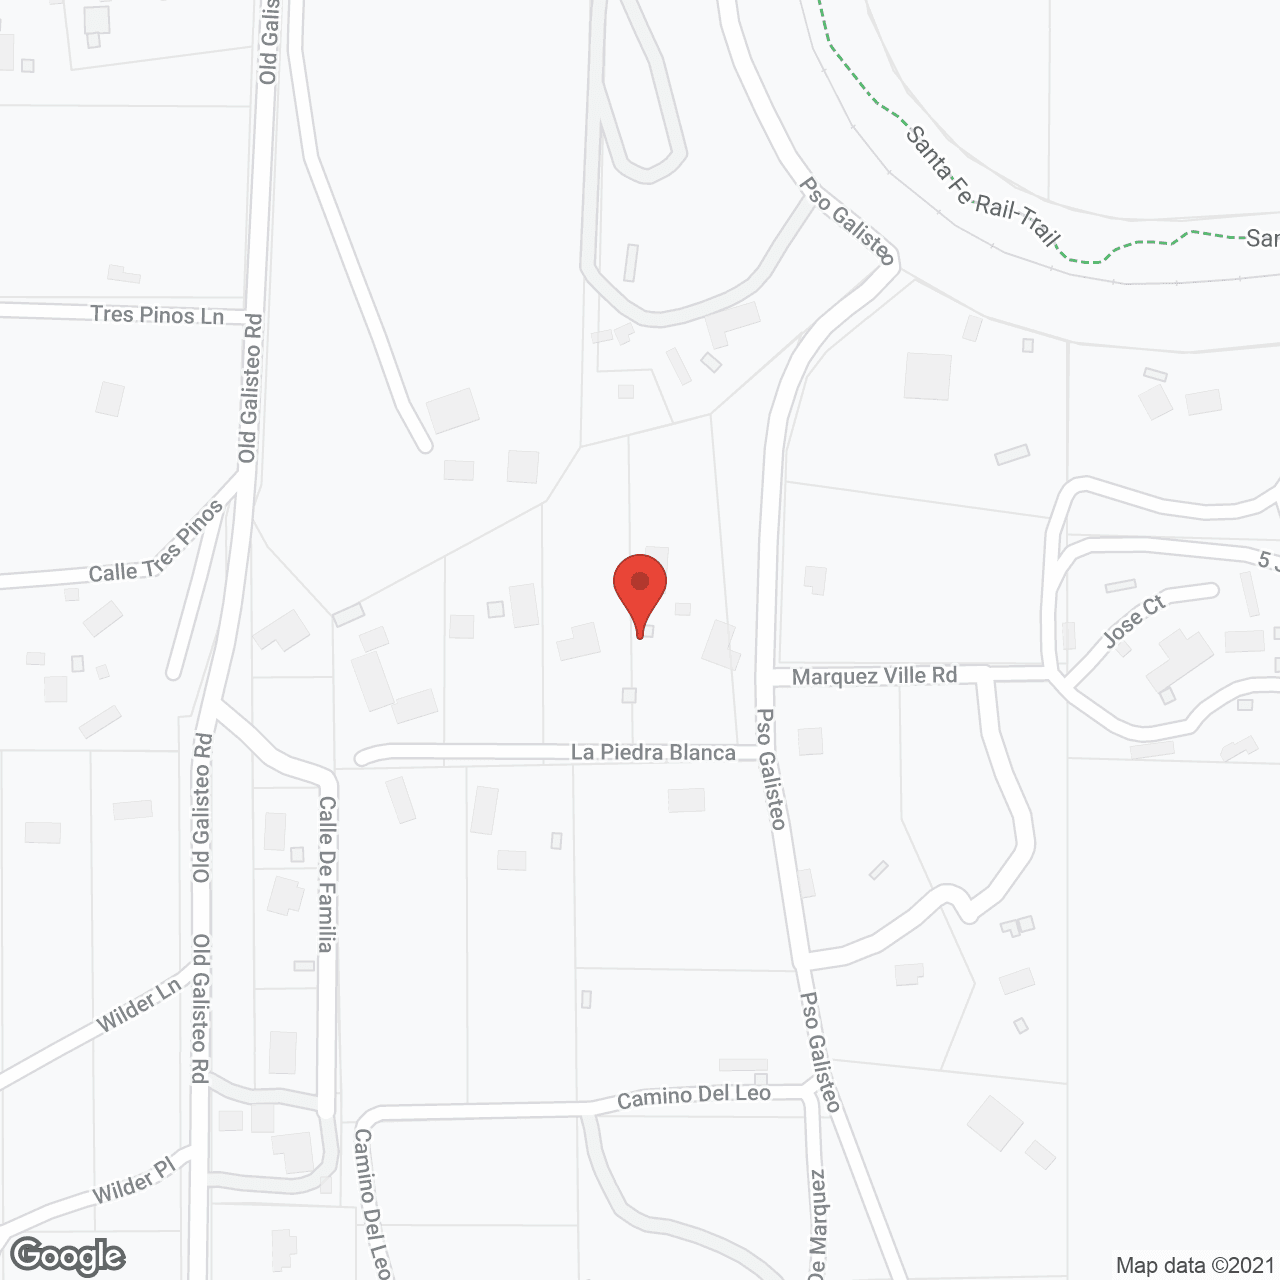 MorningStar of Santa Fe in google map